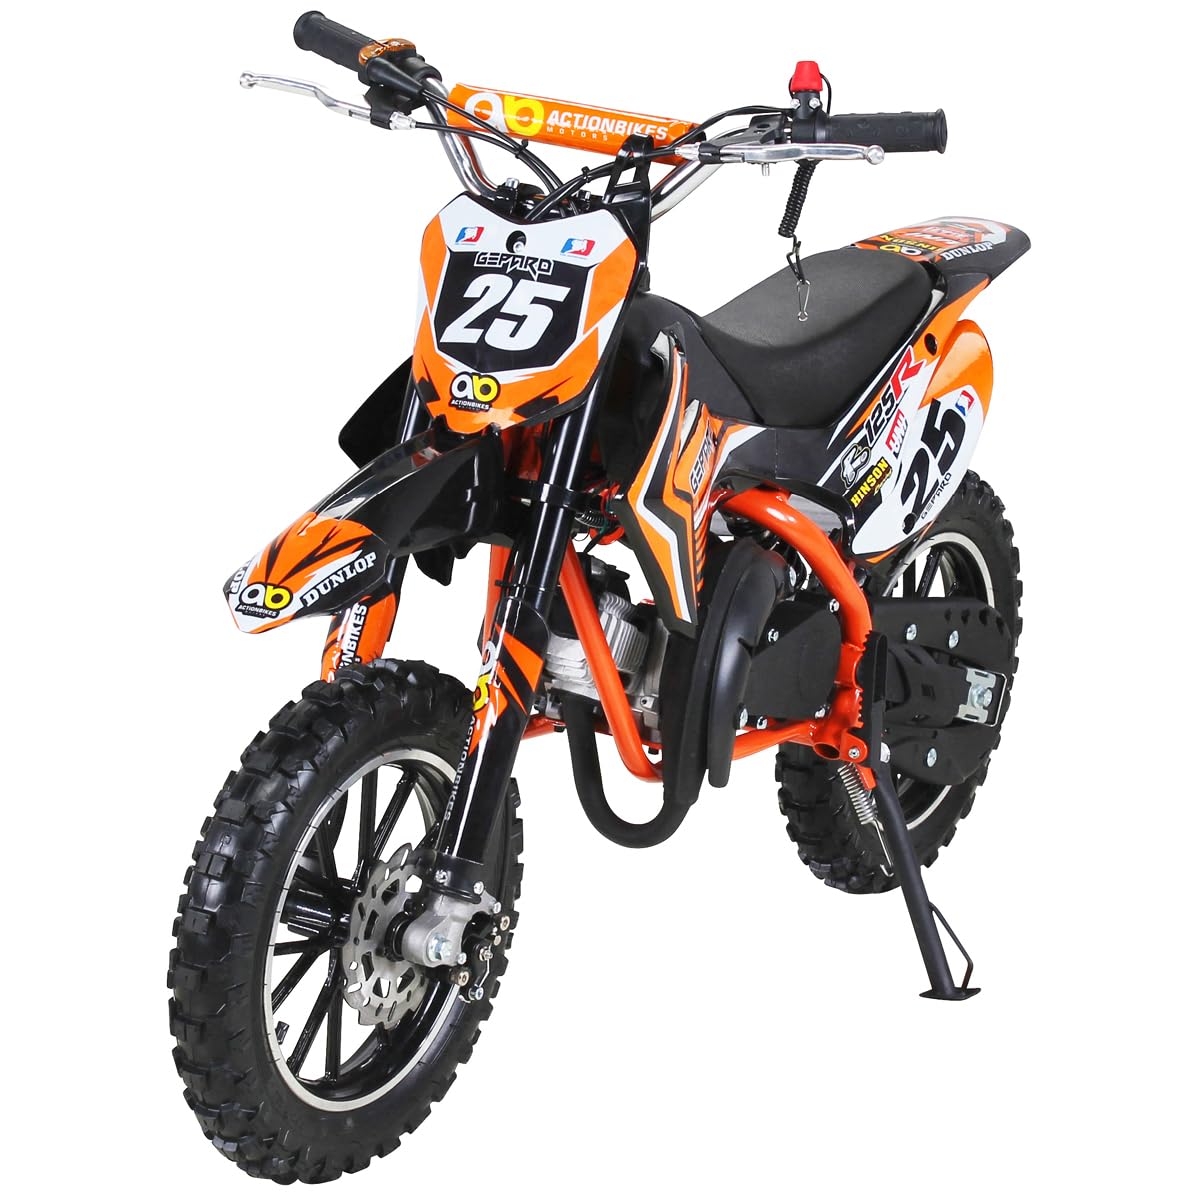 Actionbikes Motors Kinder Crossbike Gepard 2-Takt 49ccm | Bis 35 Km/h - 2 Liter Tank - Tuning Kupplung - Easy Pull Start - Scheibenbremsen - Motorrad - Motocross - Dirtbike - Enduro (Orange) von Actionbikes Motors